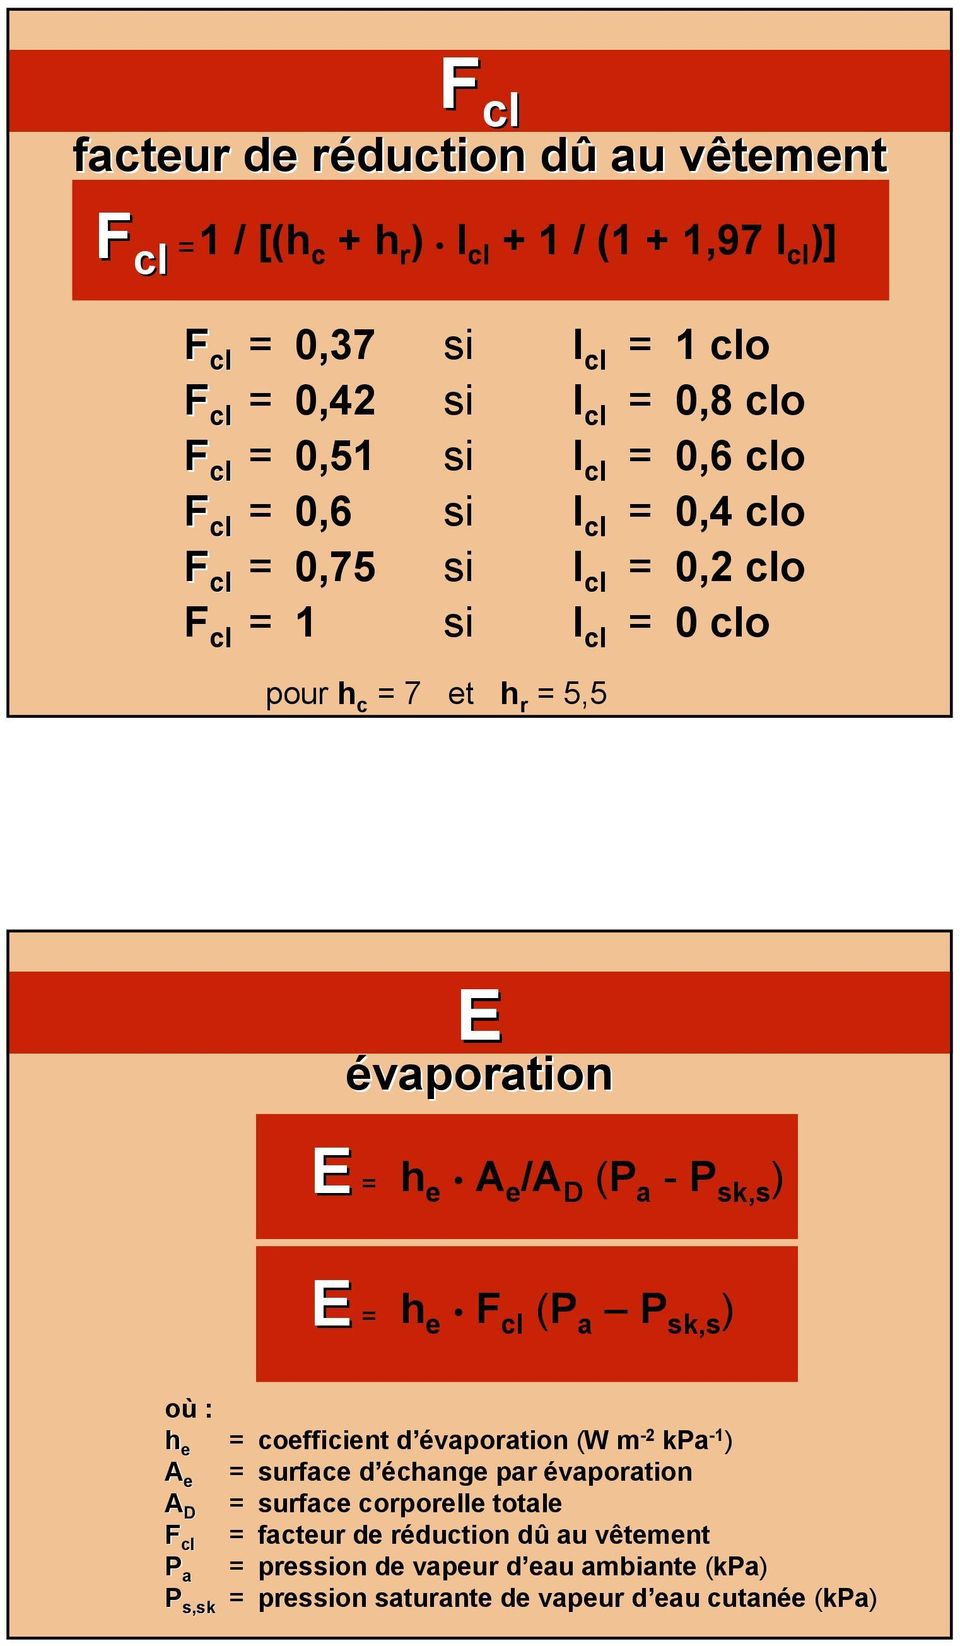 A e /A D (P a - P sk,s ) E = h e F cl (P a P sk,s ) h e = coefficient d évaporation (W m -2 kpa -1 ) A e = surface d échange par évaporation A D = surface